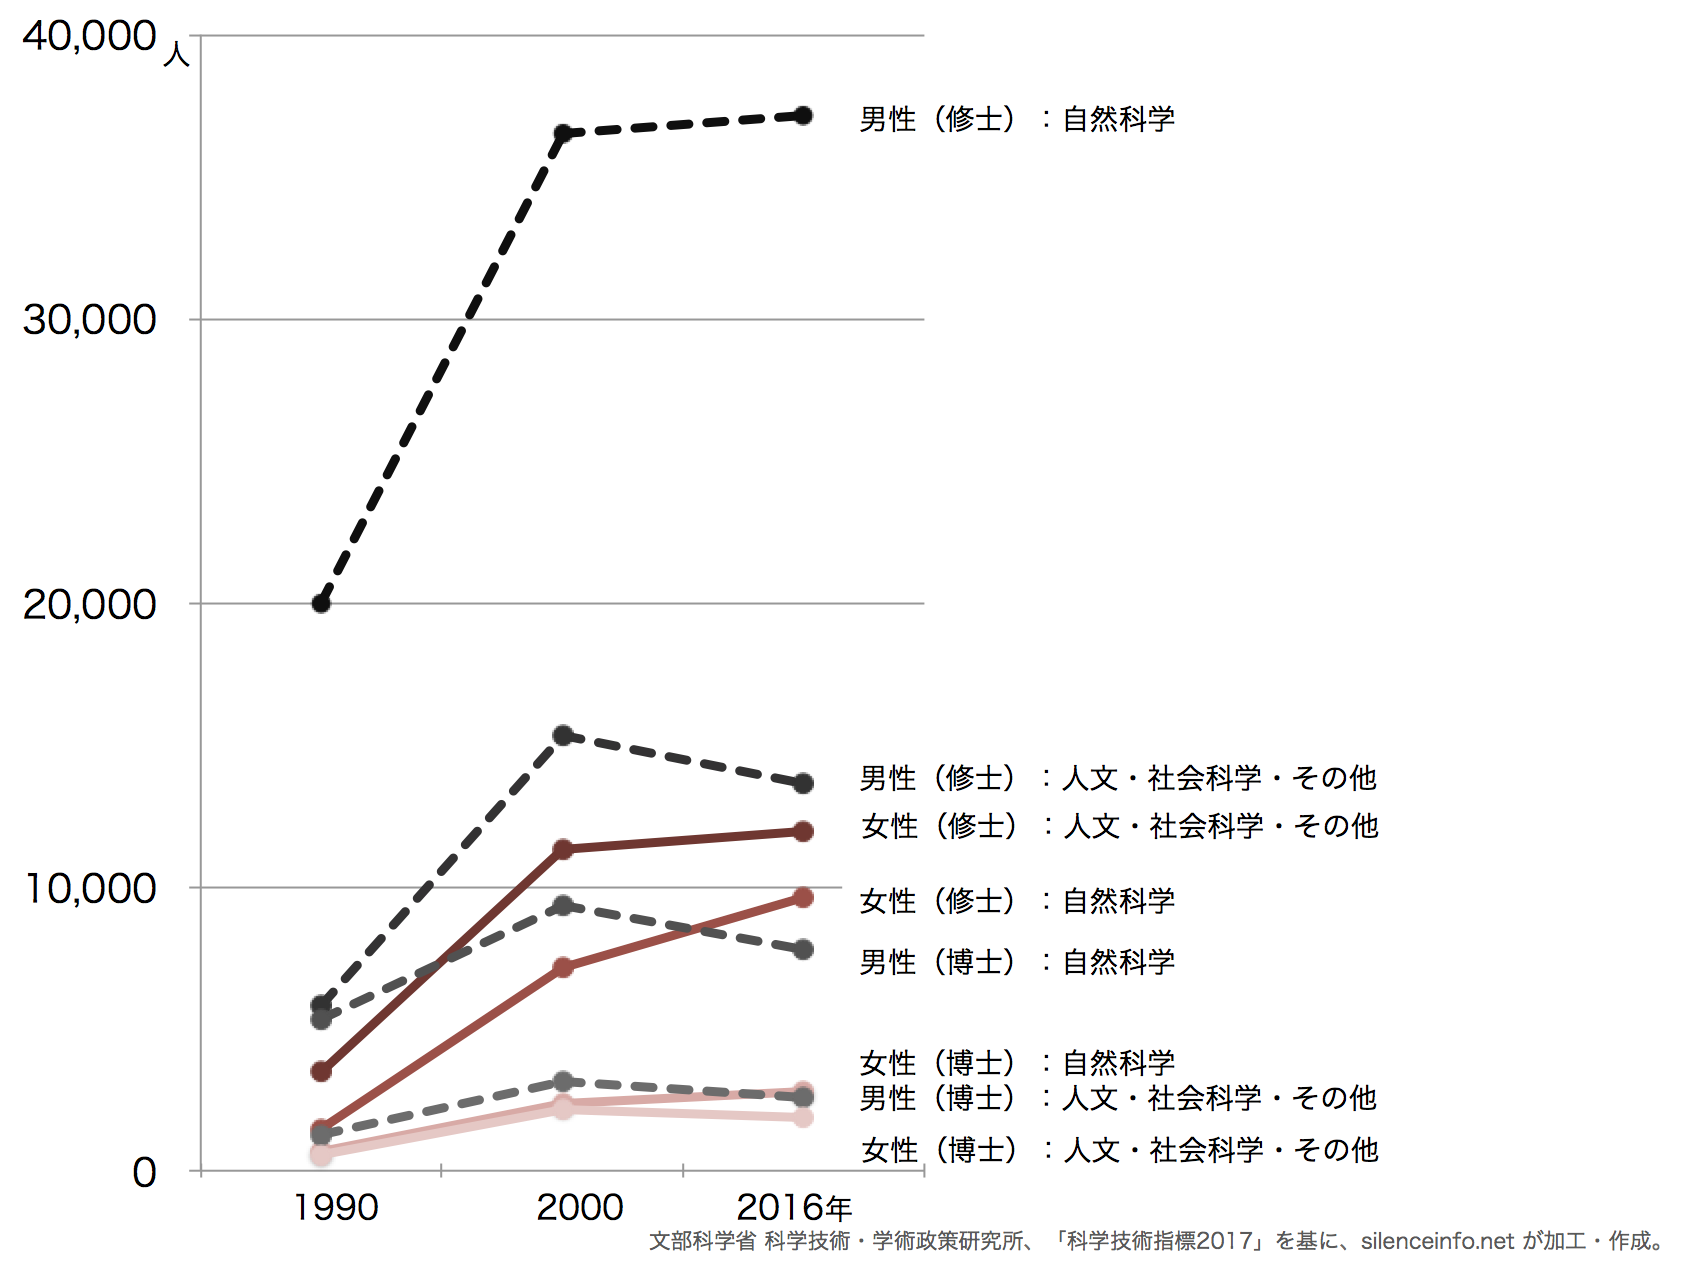 大学院入学者数の推移（男女別）に示した折れ線グラフ